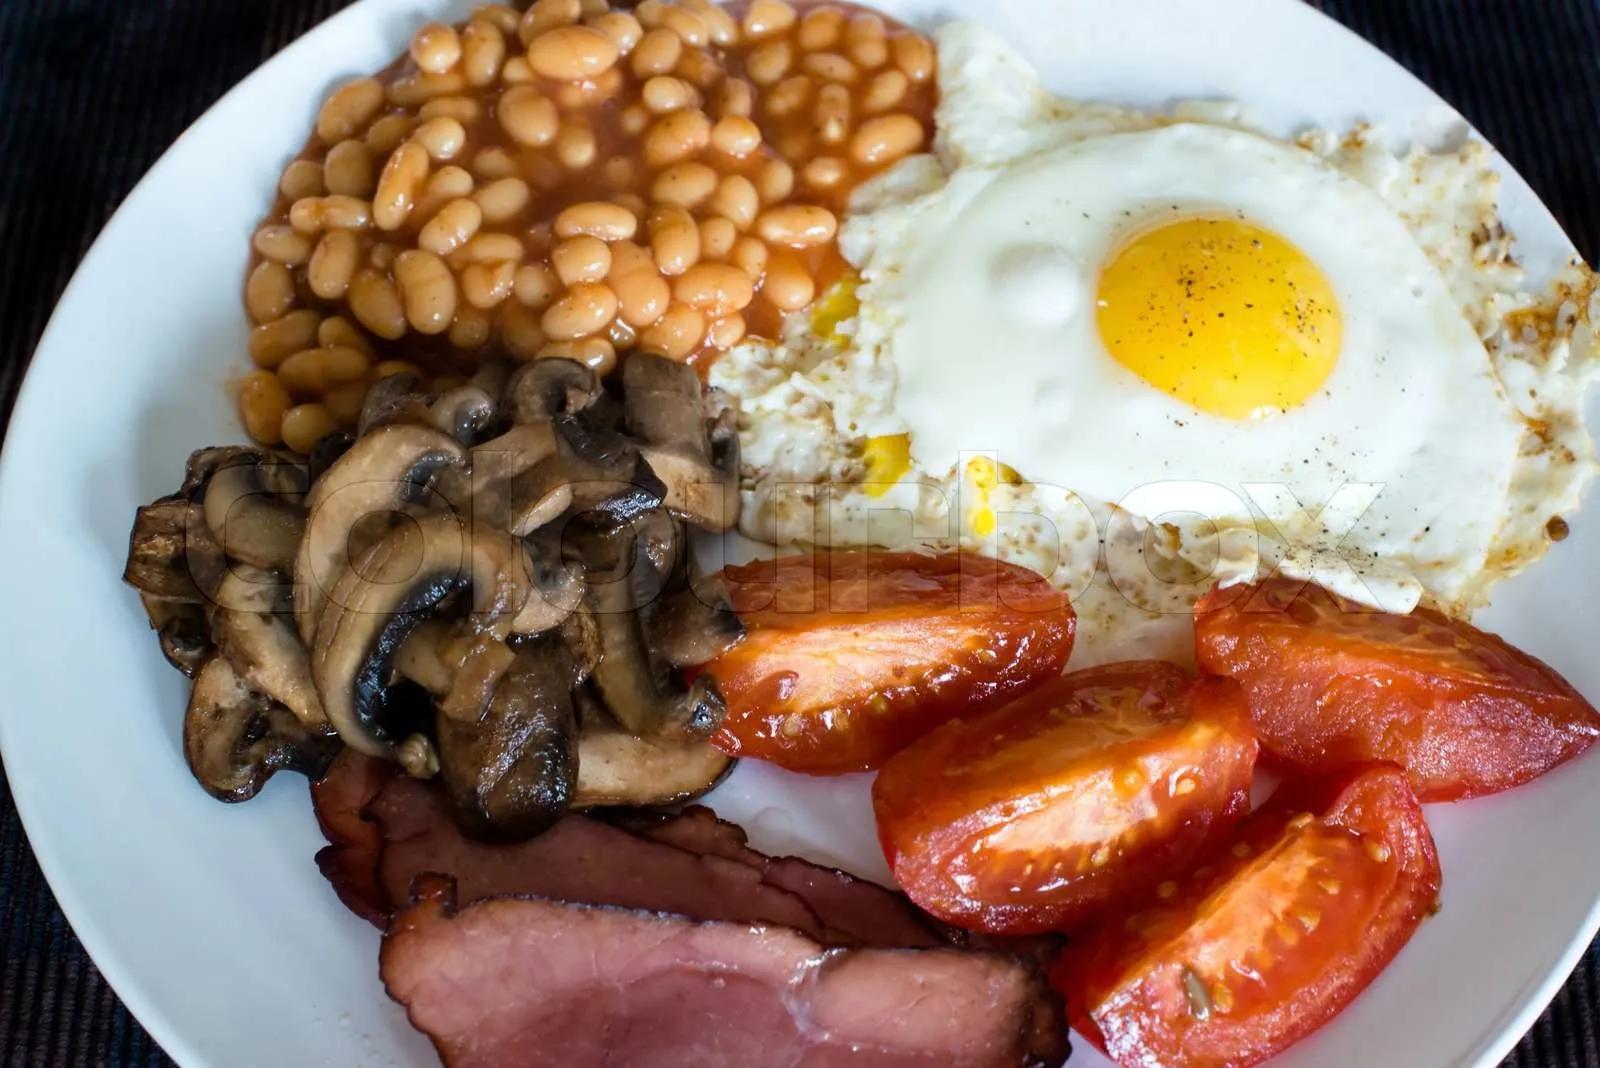 Traditionelles englisches Frühstück | Stock Bild | Colourbox